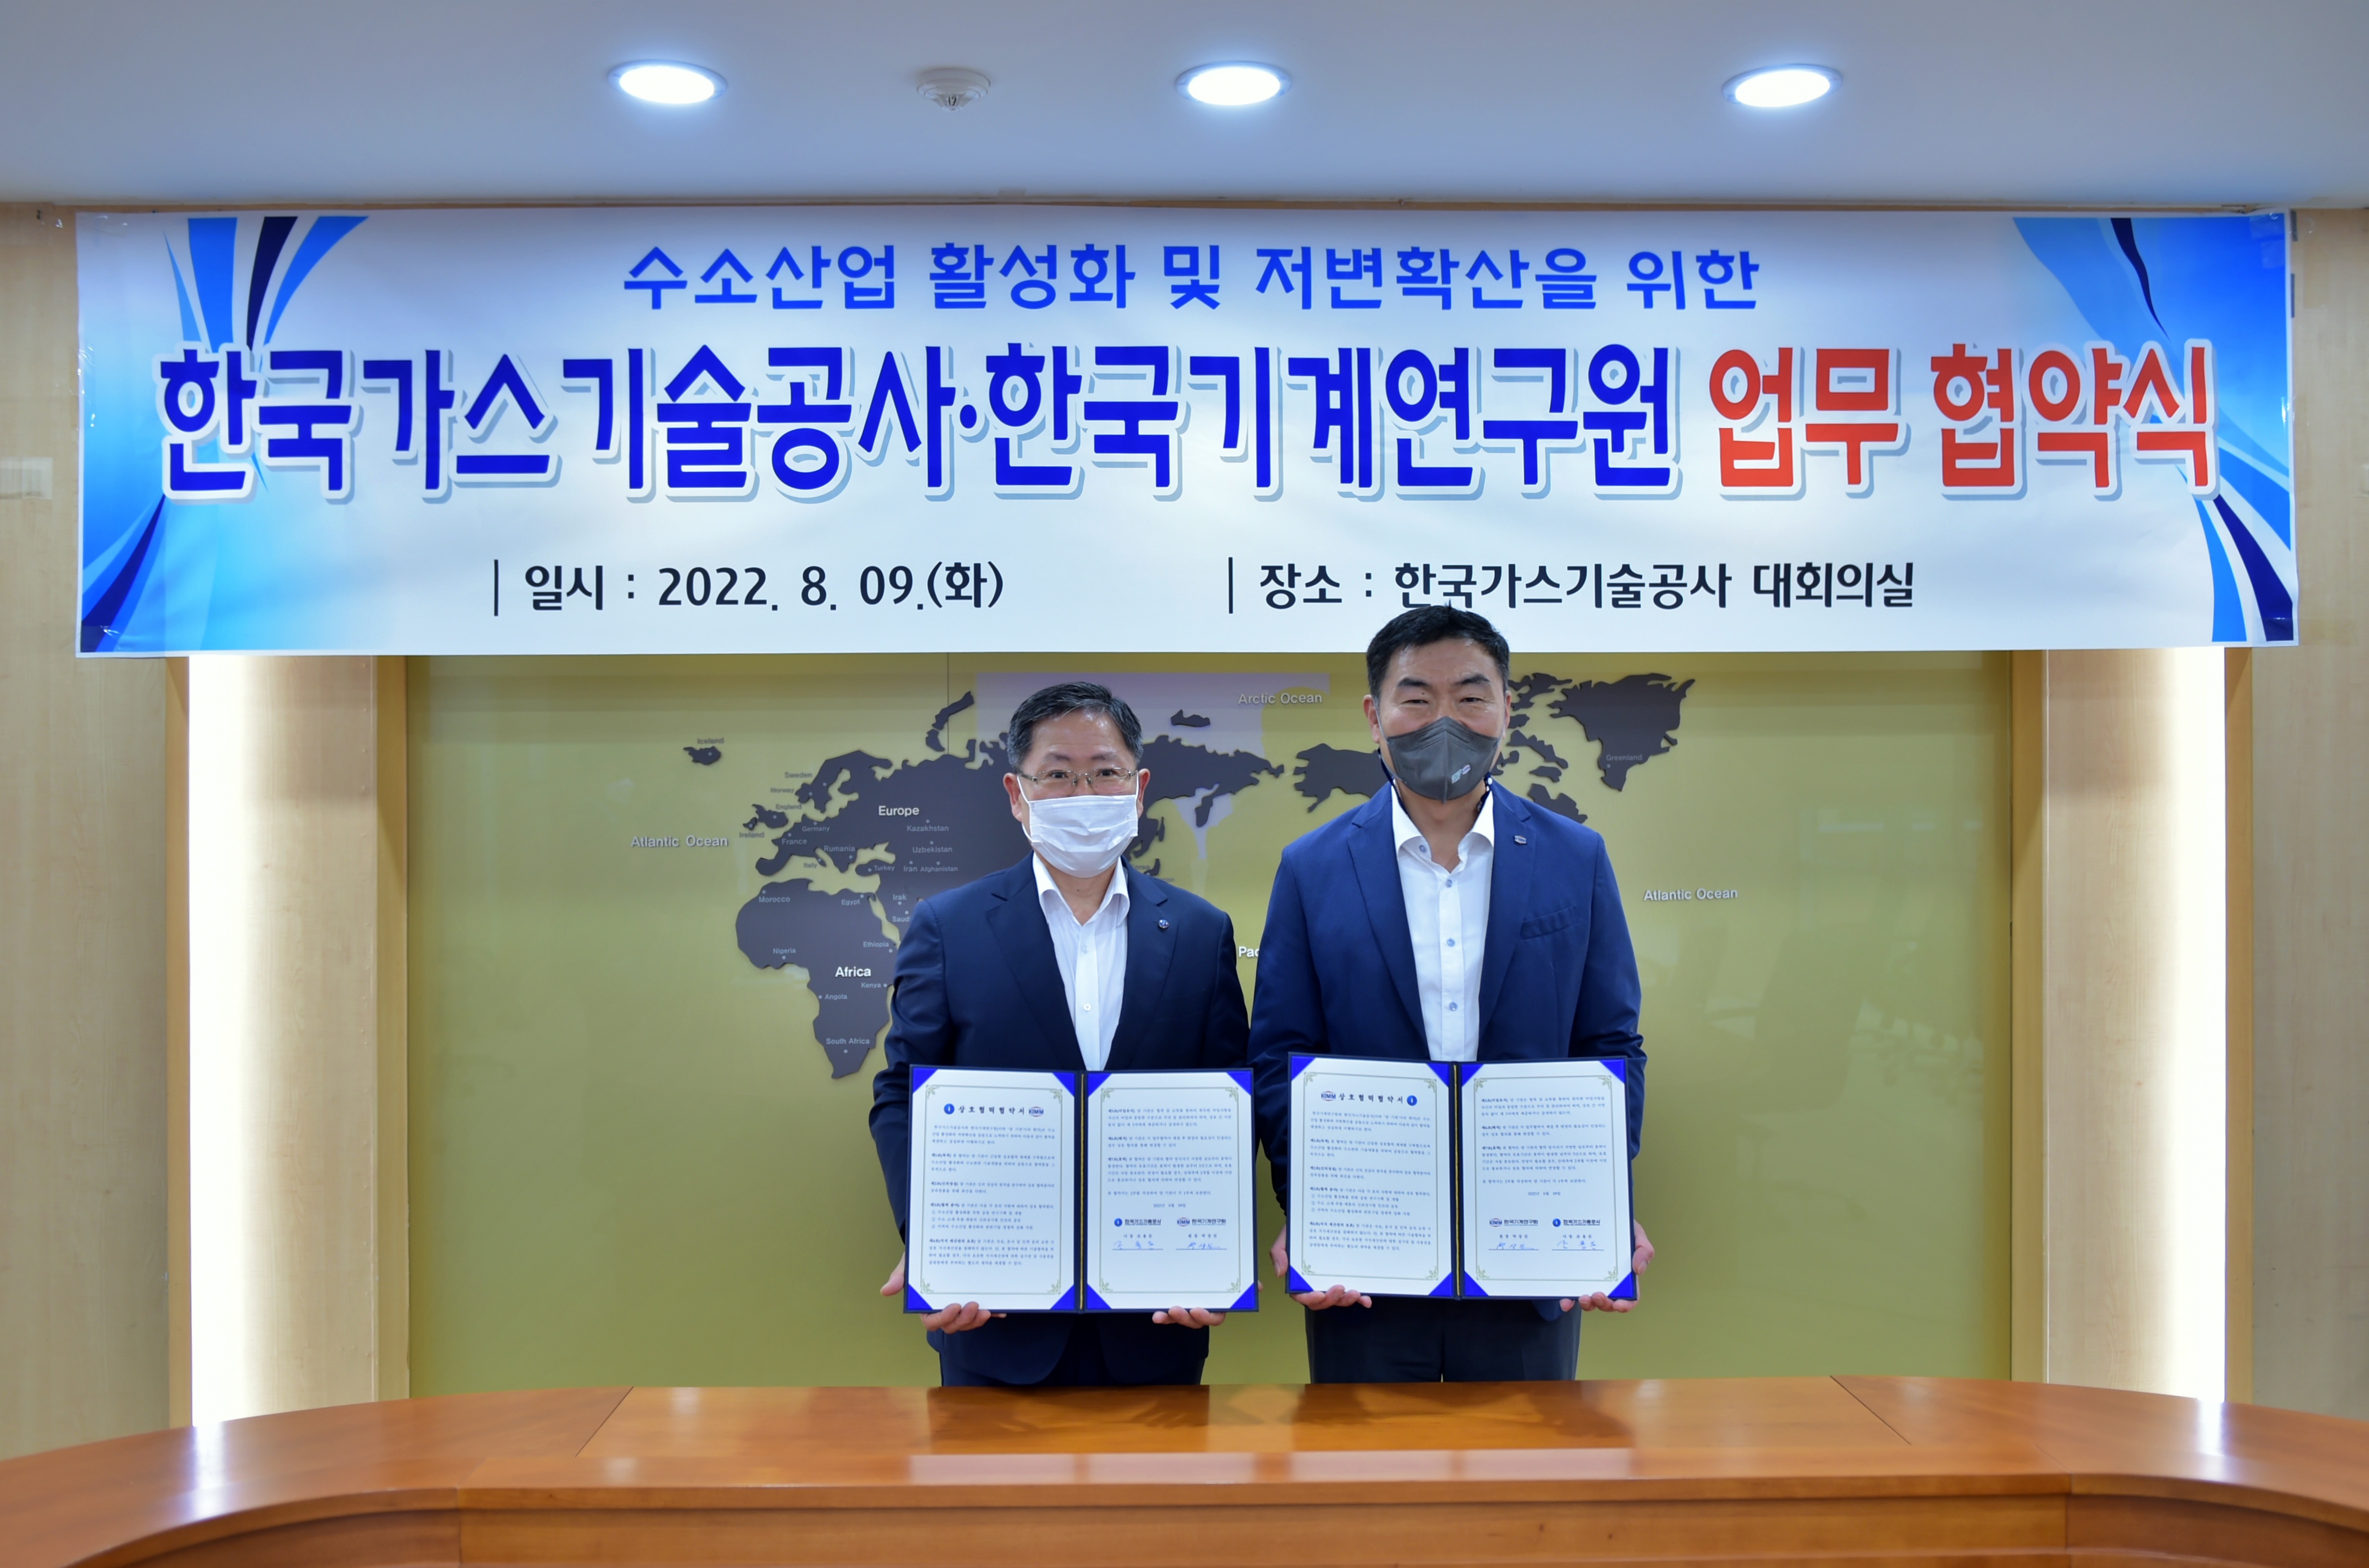 수소산업 활성화 및 저번확산을 위한 한국가스기술공사 한국기계연구원 업무 협약식 일시 2022.8.09.(화) 장소:한국가스기술공사 대회의실